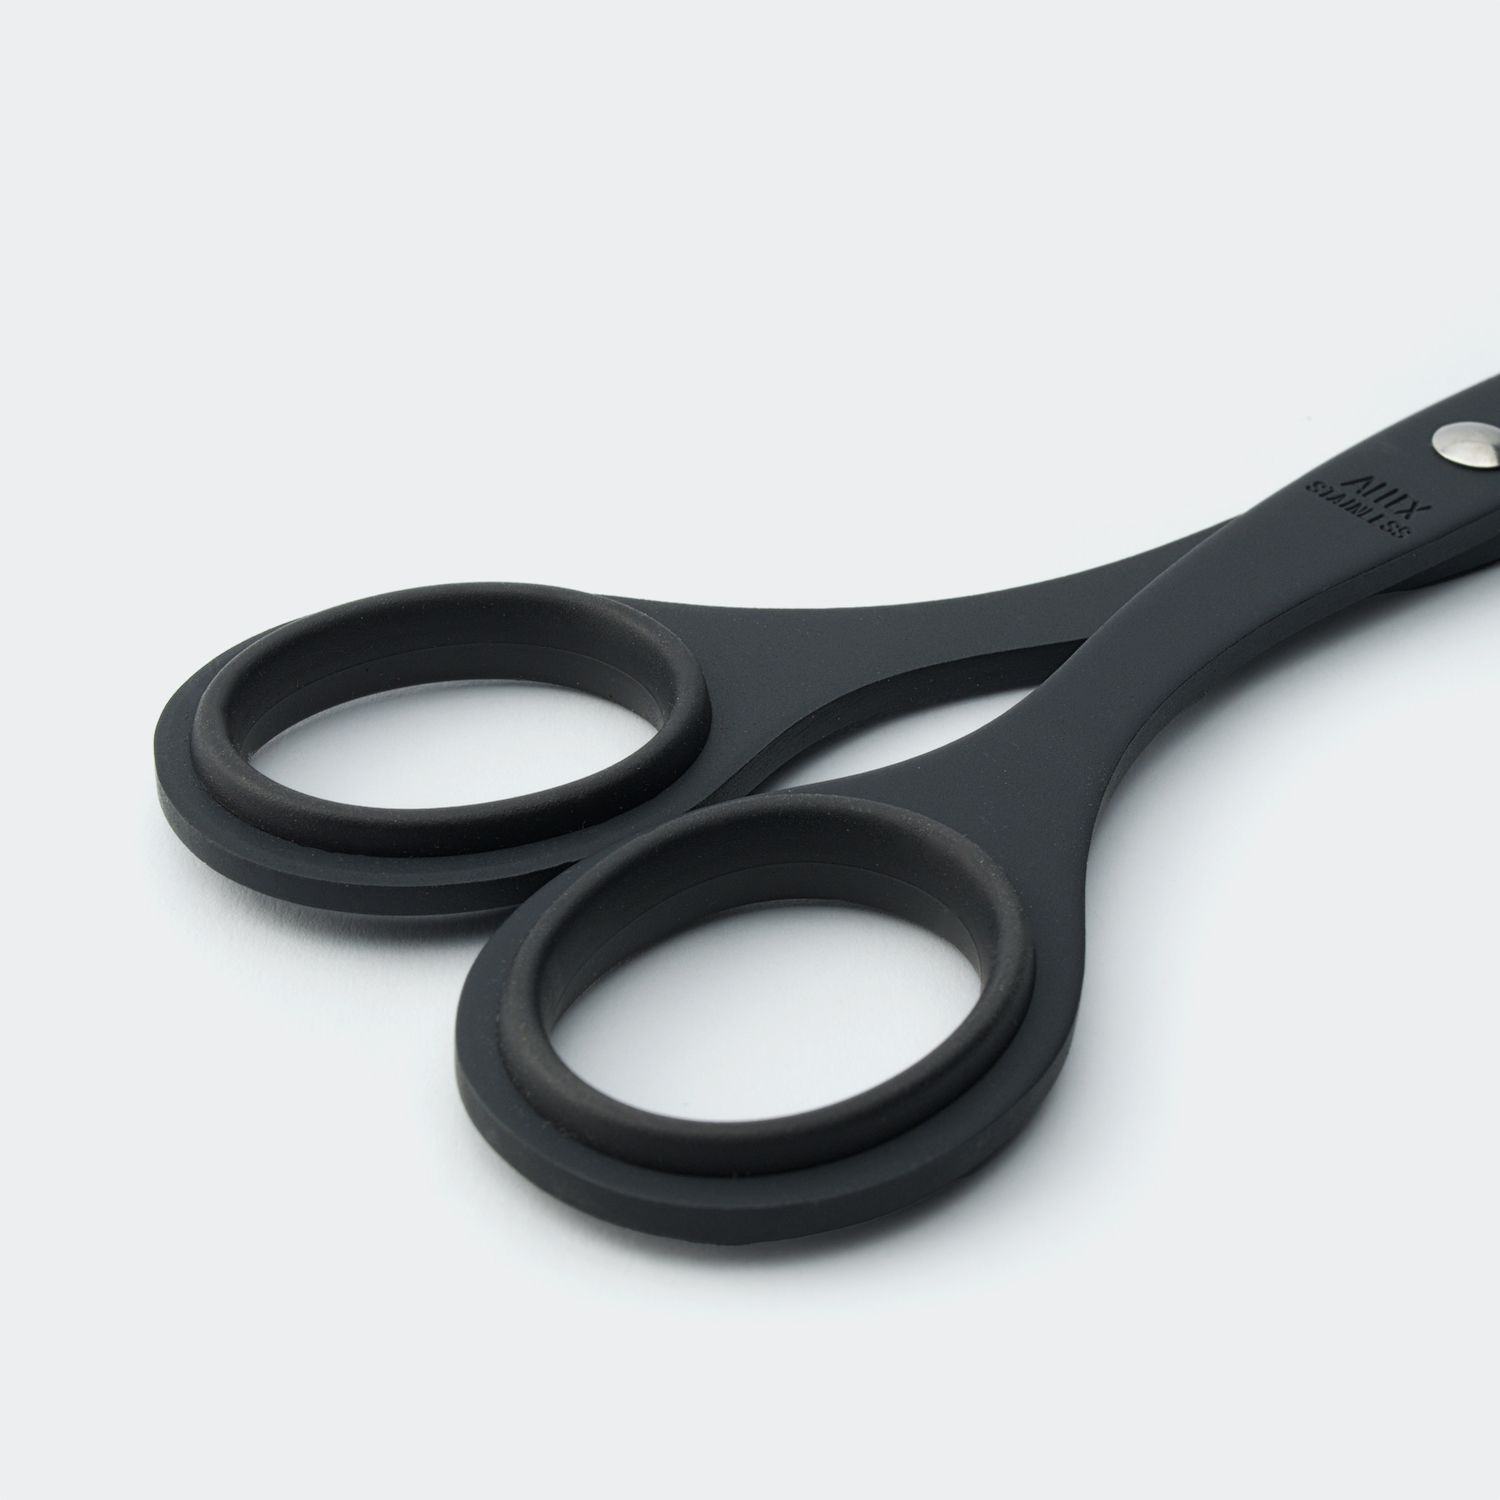 Allex Matte Black Stainless Steel Scissors